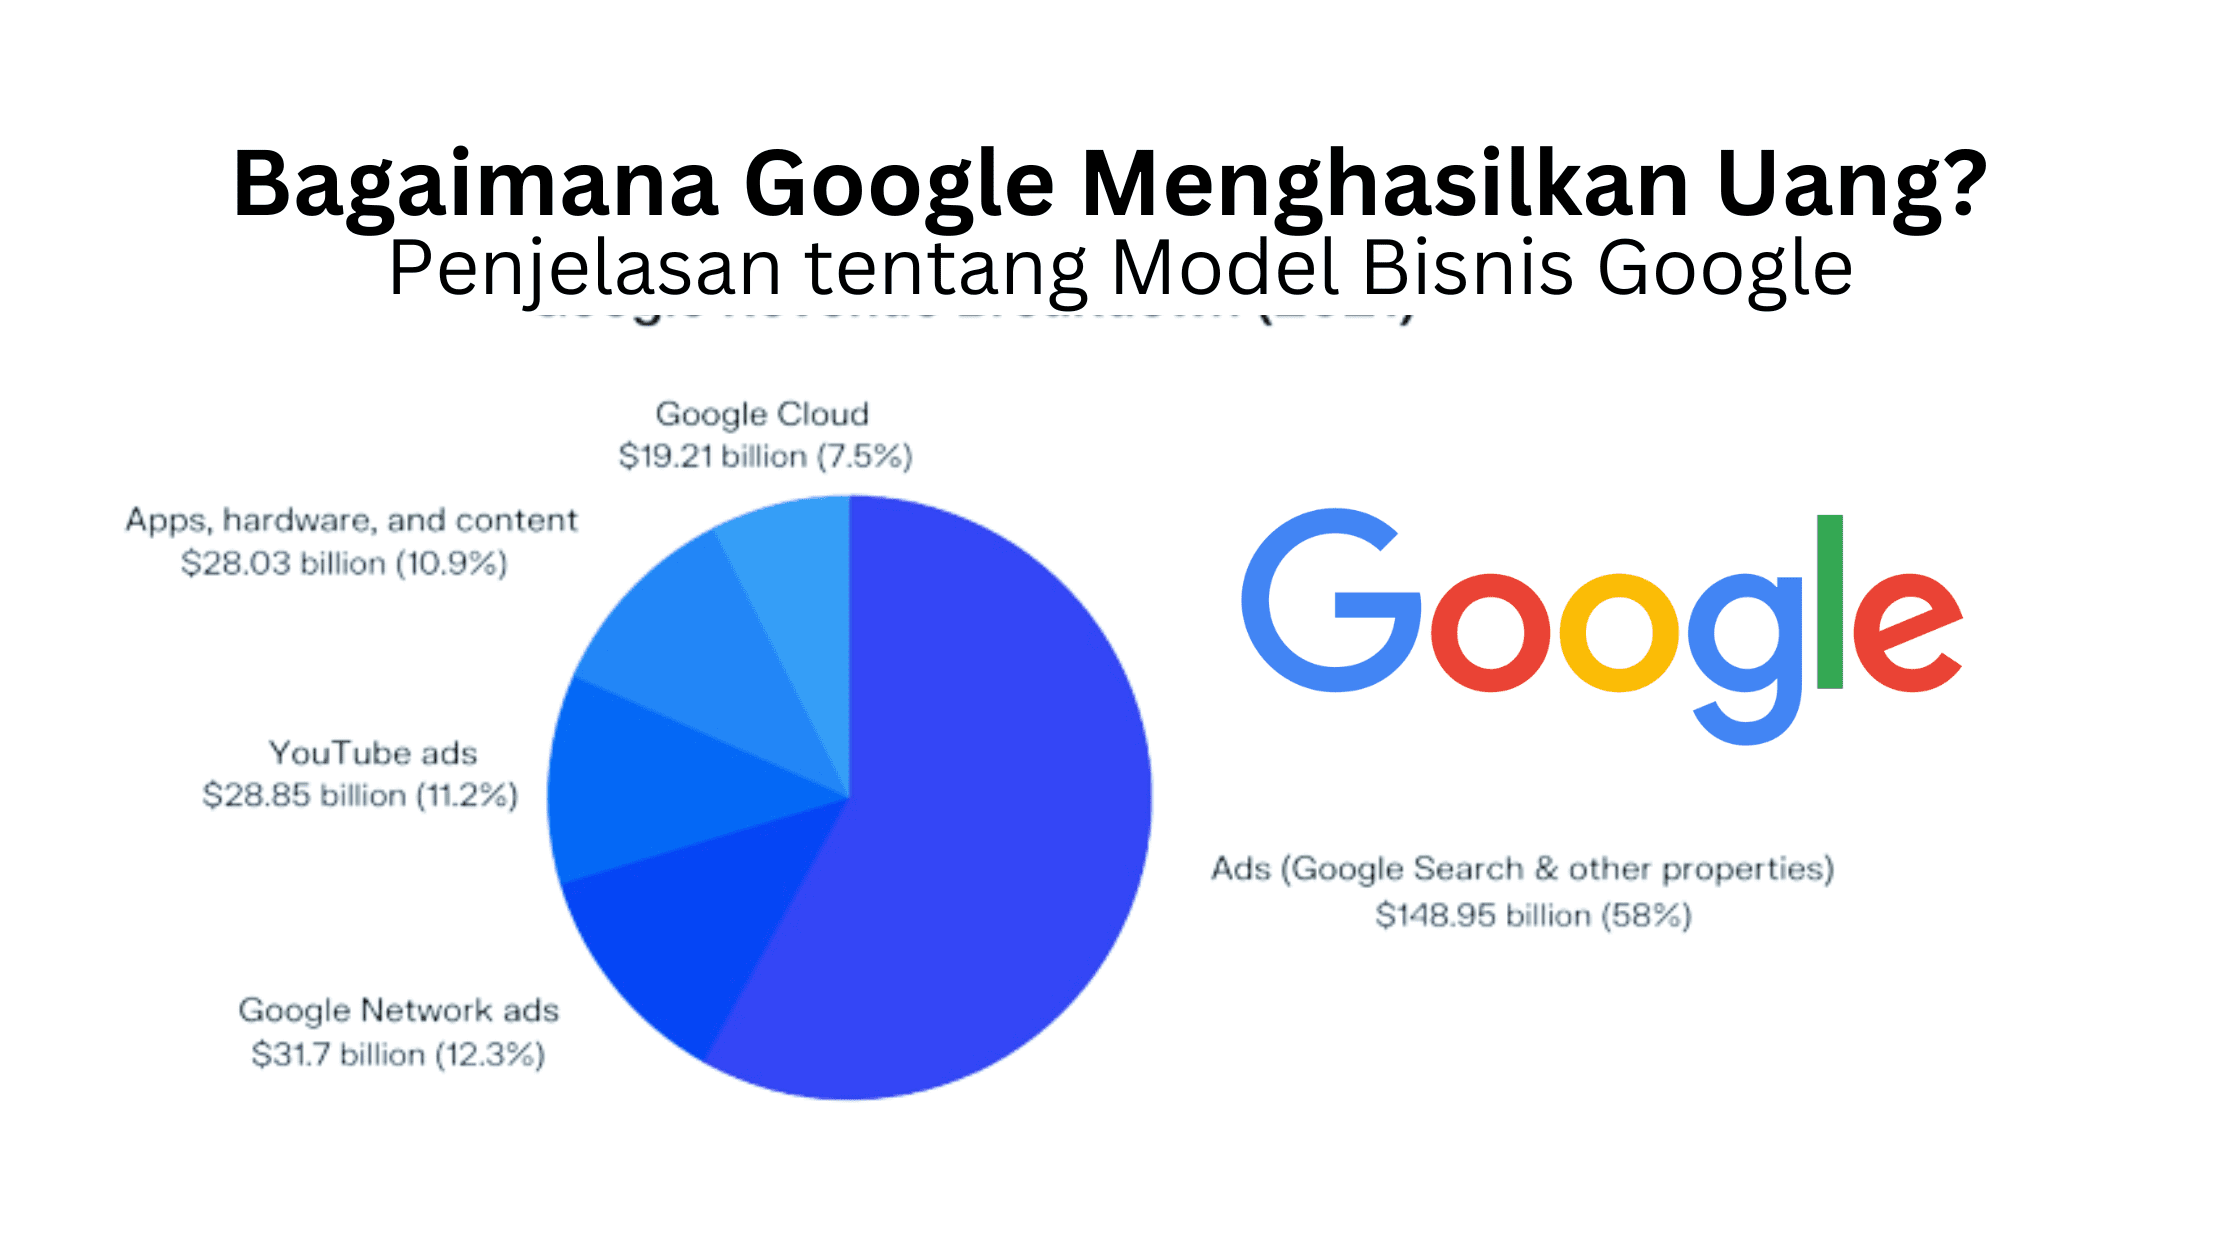 Bagaimana Google Menghasilkan Uang? Penjelasan tentang Model Bisnis Google